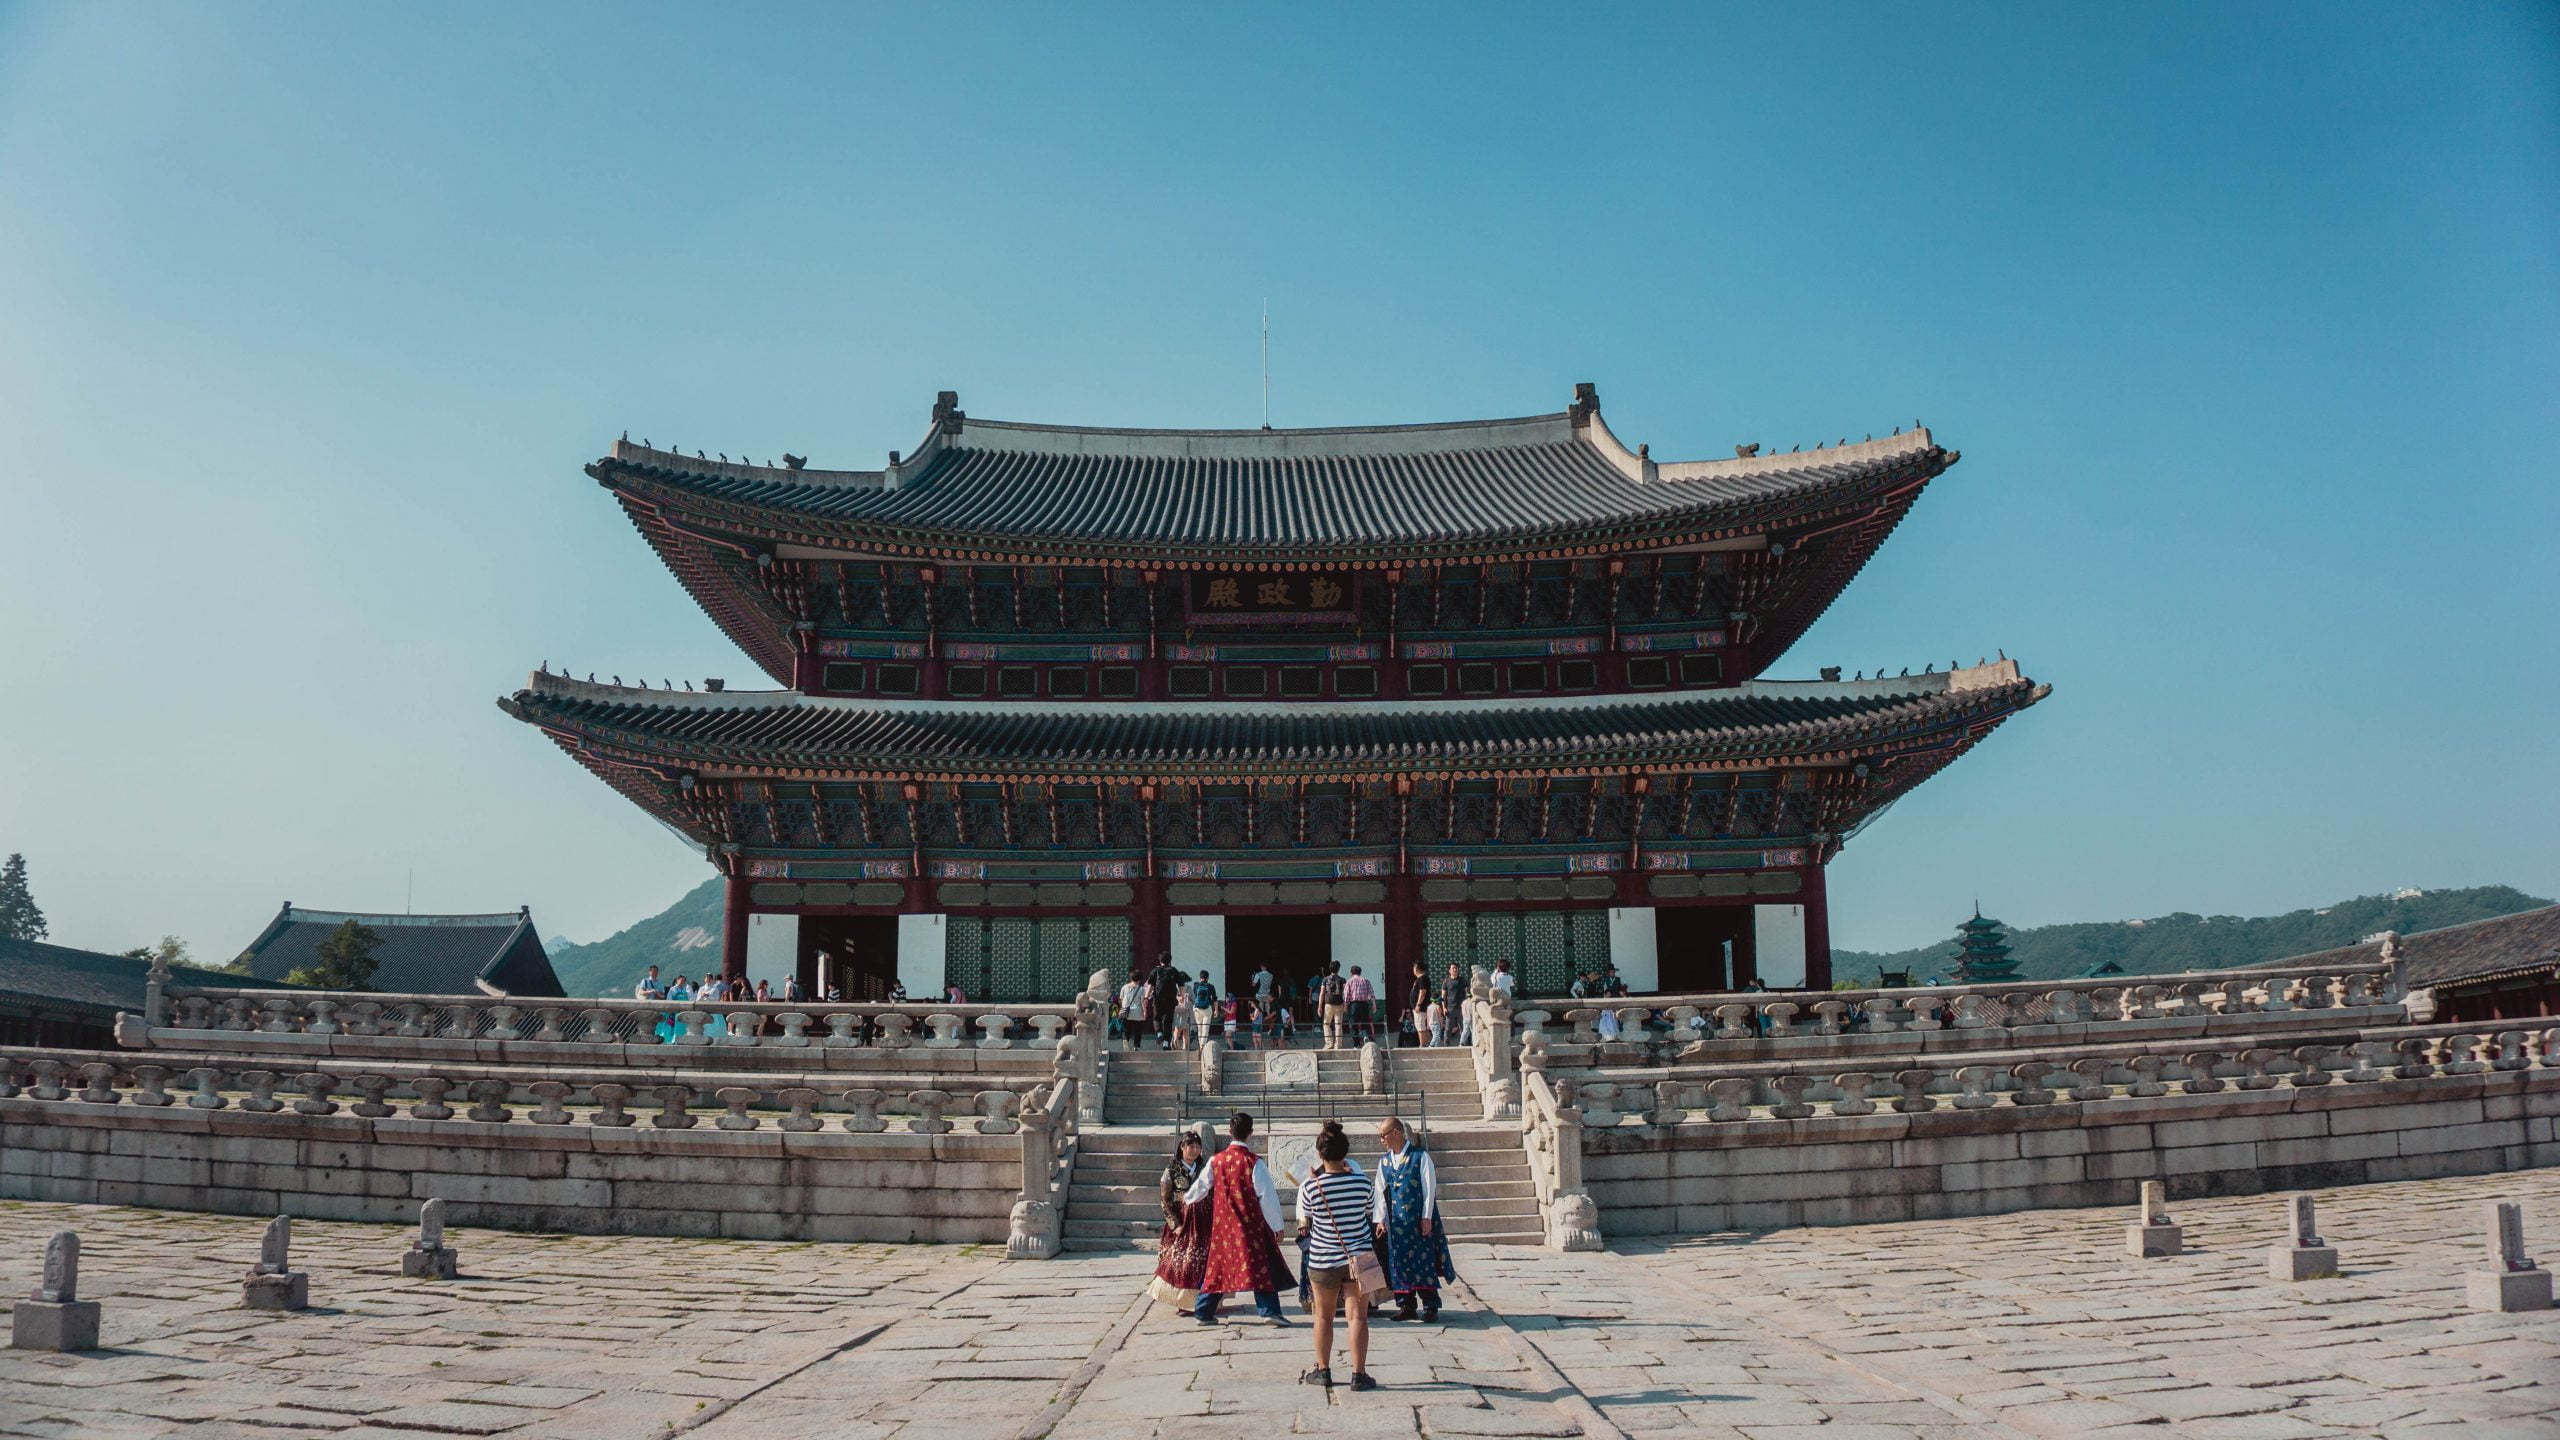 รูปภาพ : เที่ยวเกาหลี พระราชวังเคียงบกกุง (Gyeongbokgung Palace)